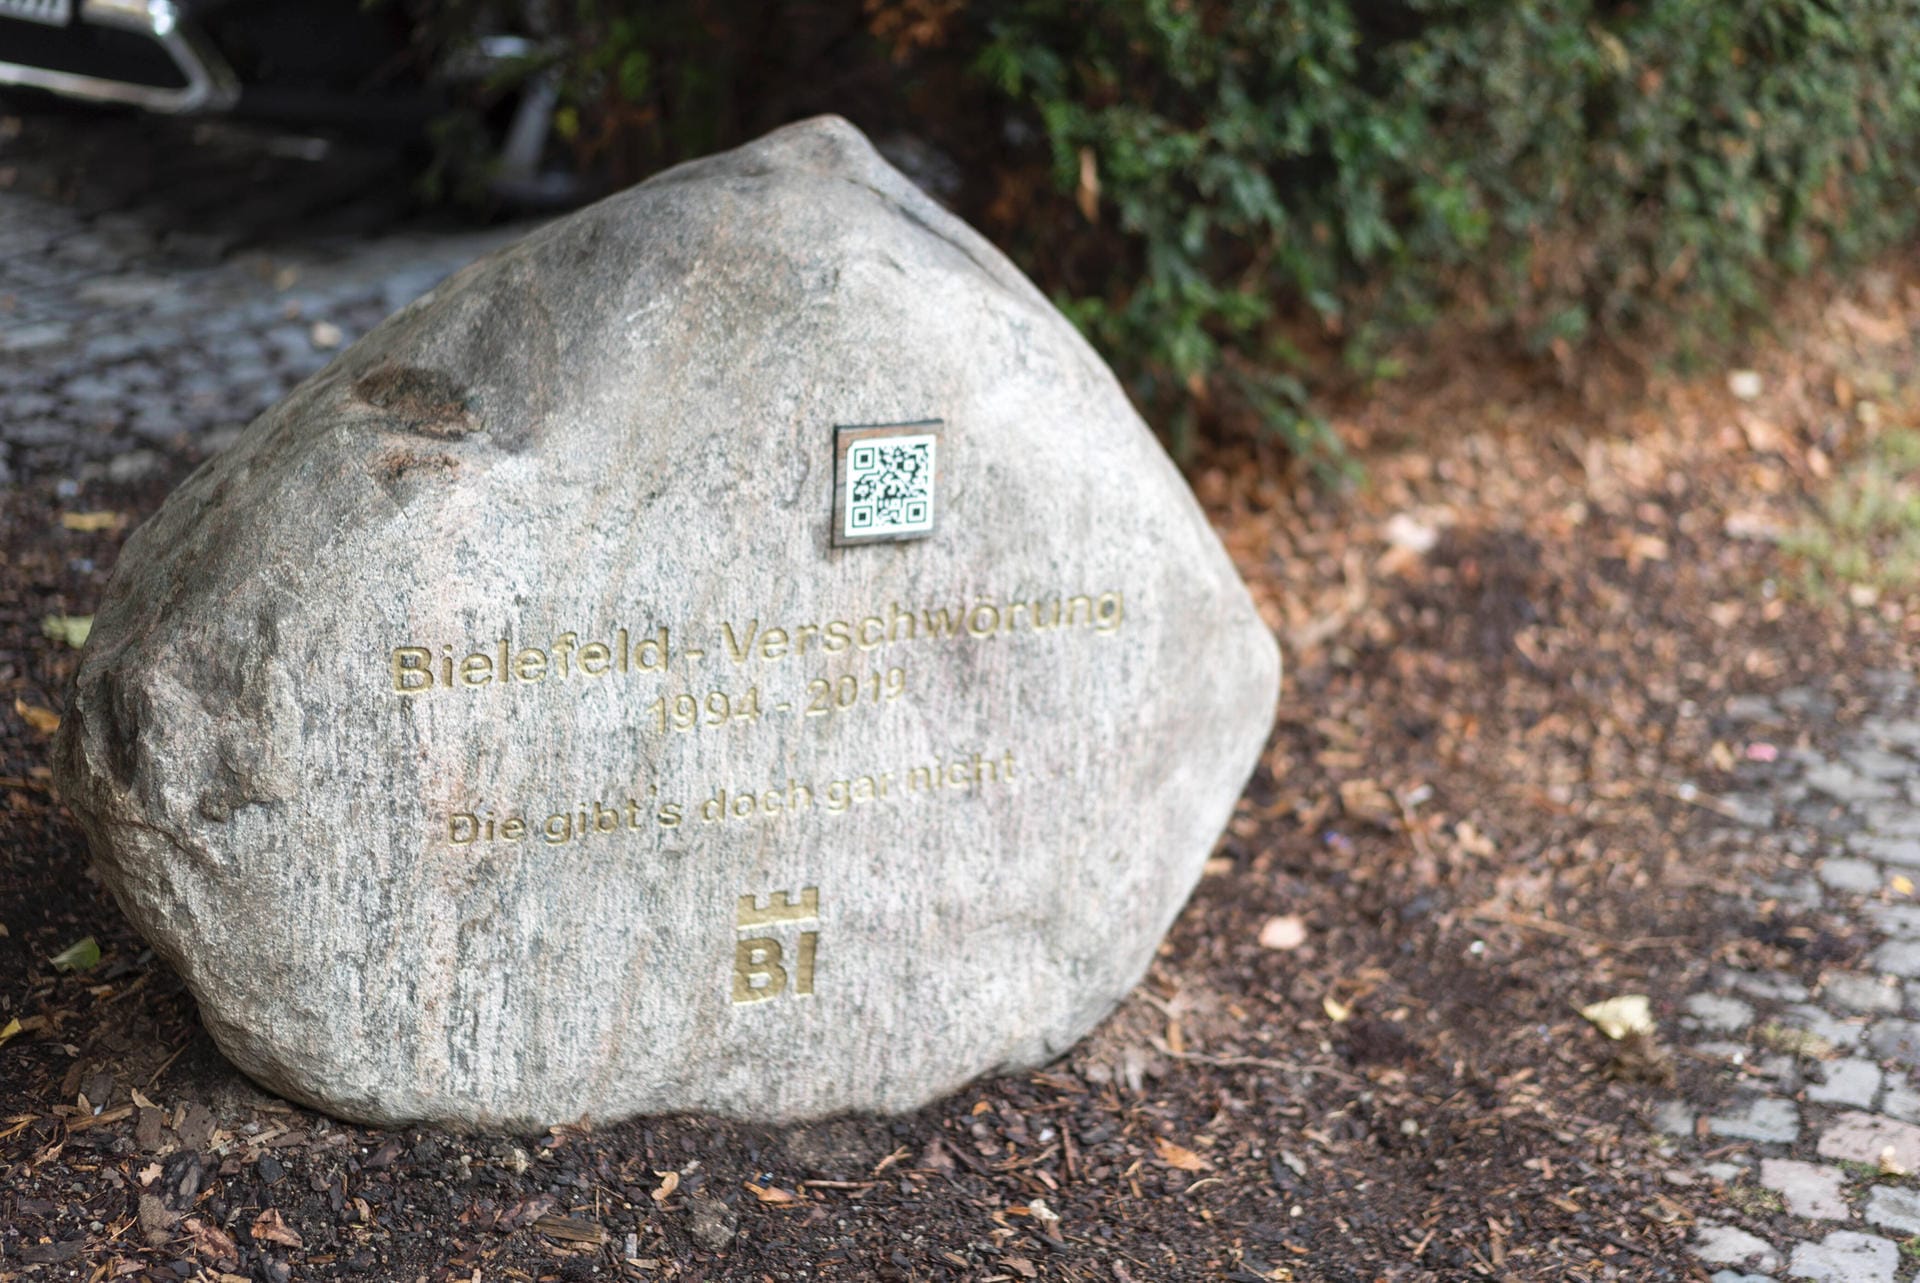 Grabstein der Bielefeld-Verschwörung: Der symbolische Grabstein in der Altstadt soll die Bielefeld-Verschwörung beenden, die besagt, dass es die Stadt gar nicht gebe.